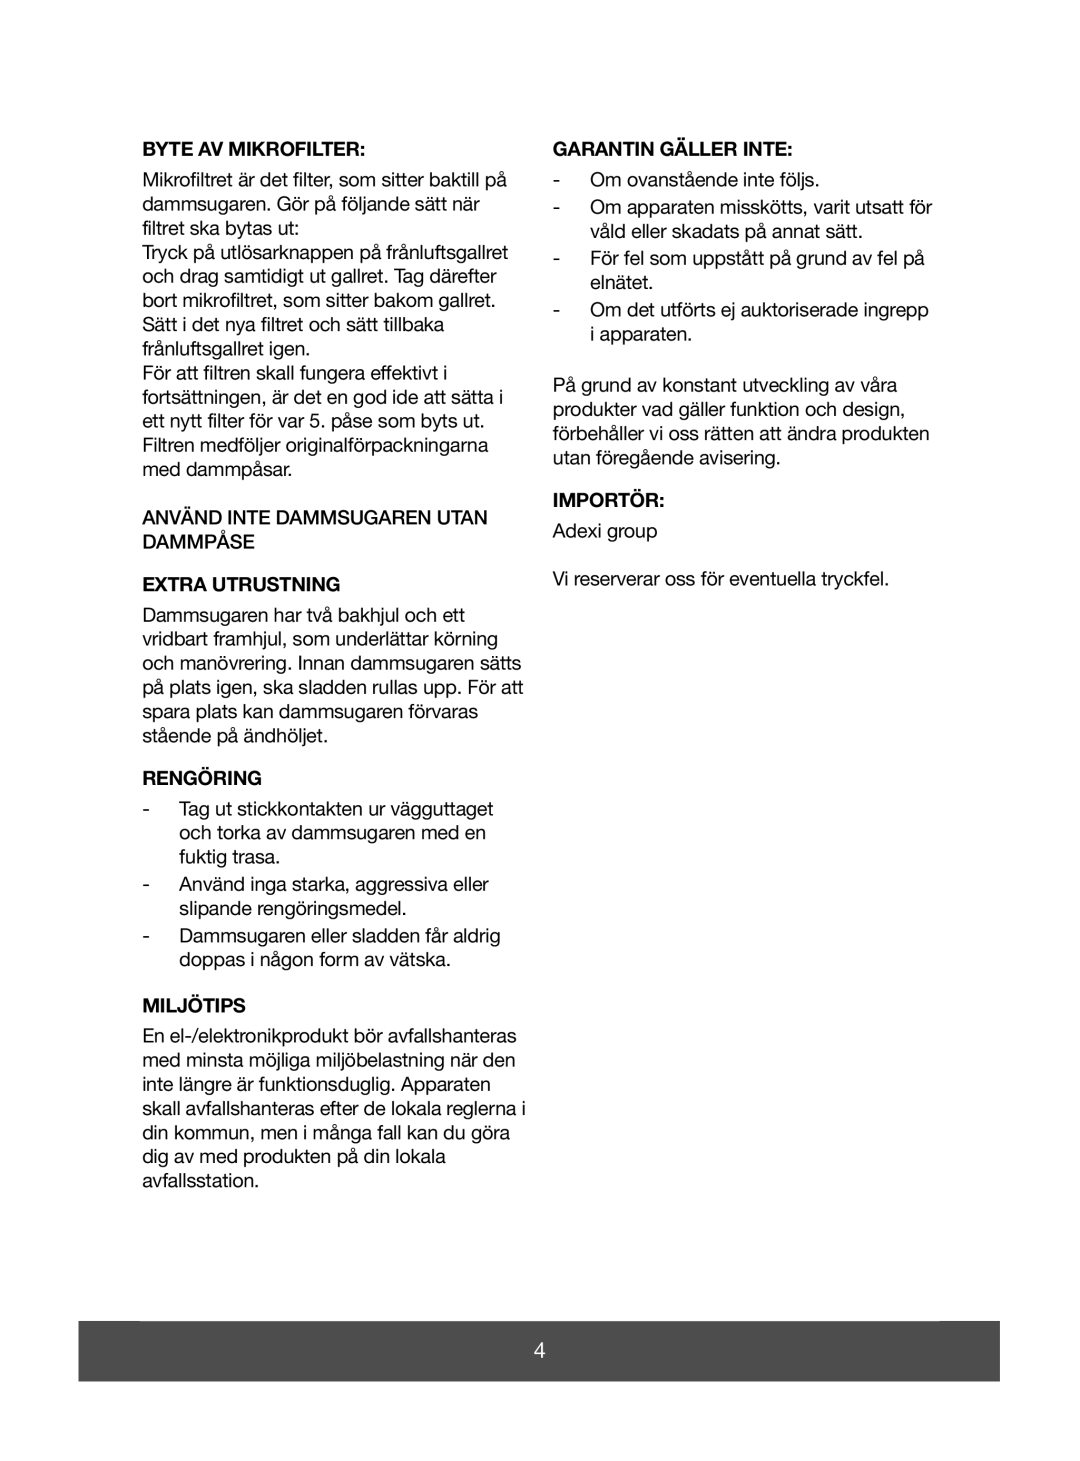 Melissa 640-070 manual Byte Av Mikrofilter, Extra Utrustning, Rengöring, Miljötips, Garantin Gäller Inte, Importör 